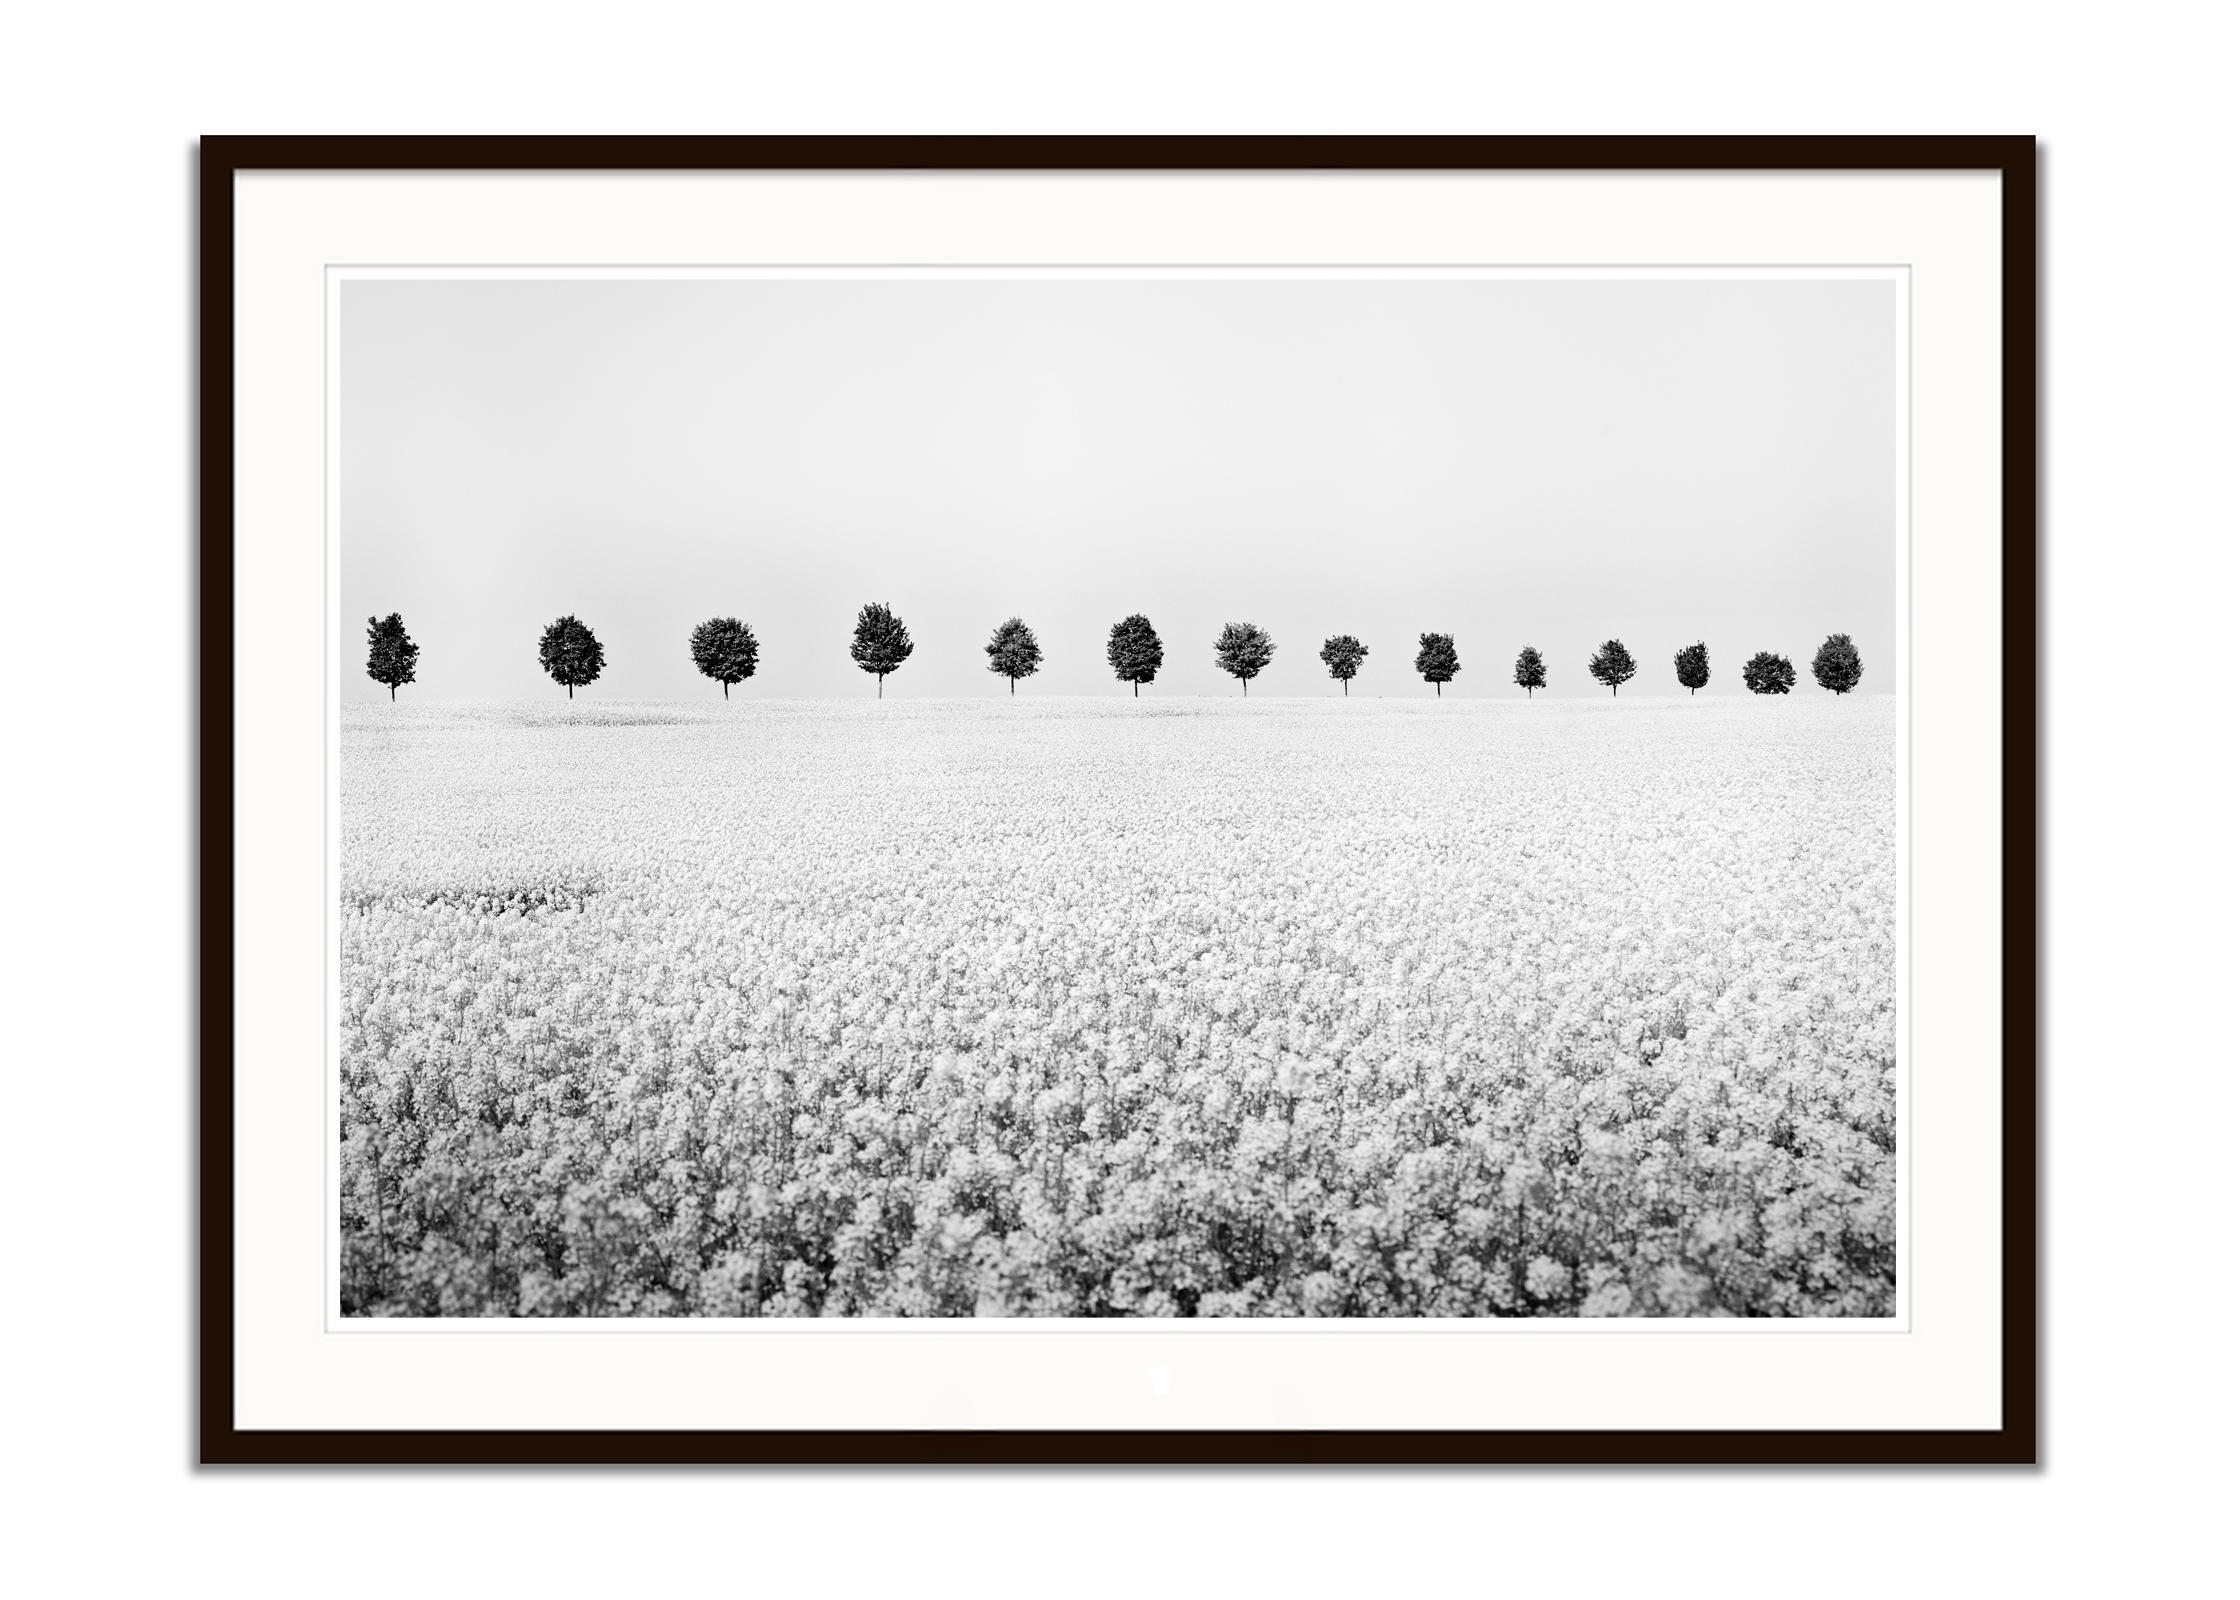 Messingica Napus-Blumenserie in Schwarz-Weiß, minimalistische Landschaftsfotografie (Grau), Landscape Photograph, von Gerald Berghammer